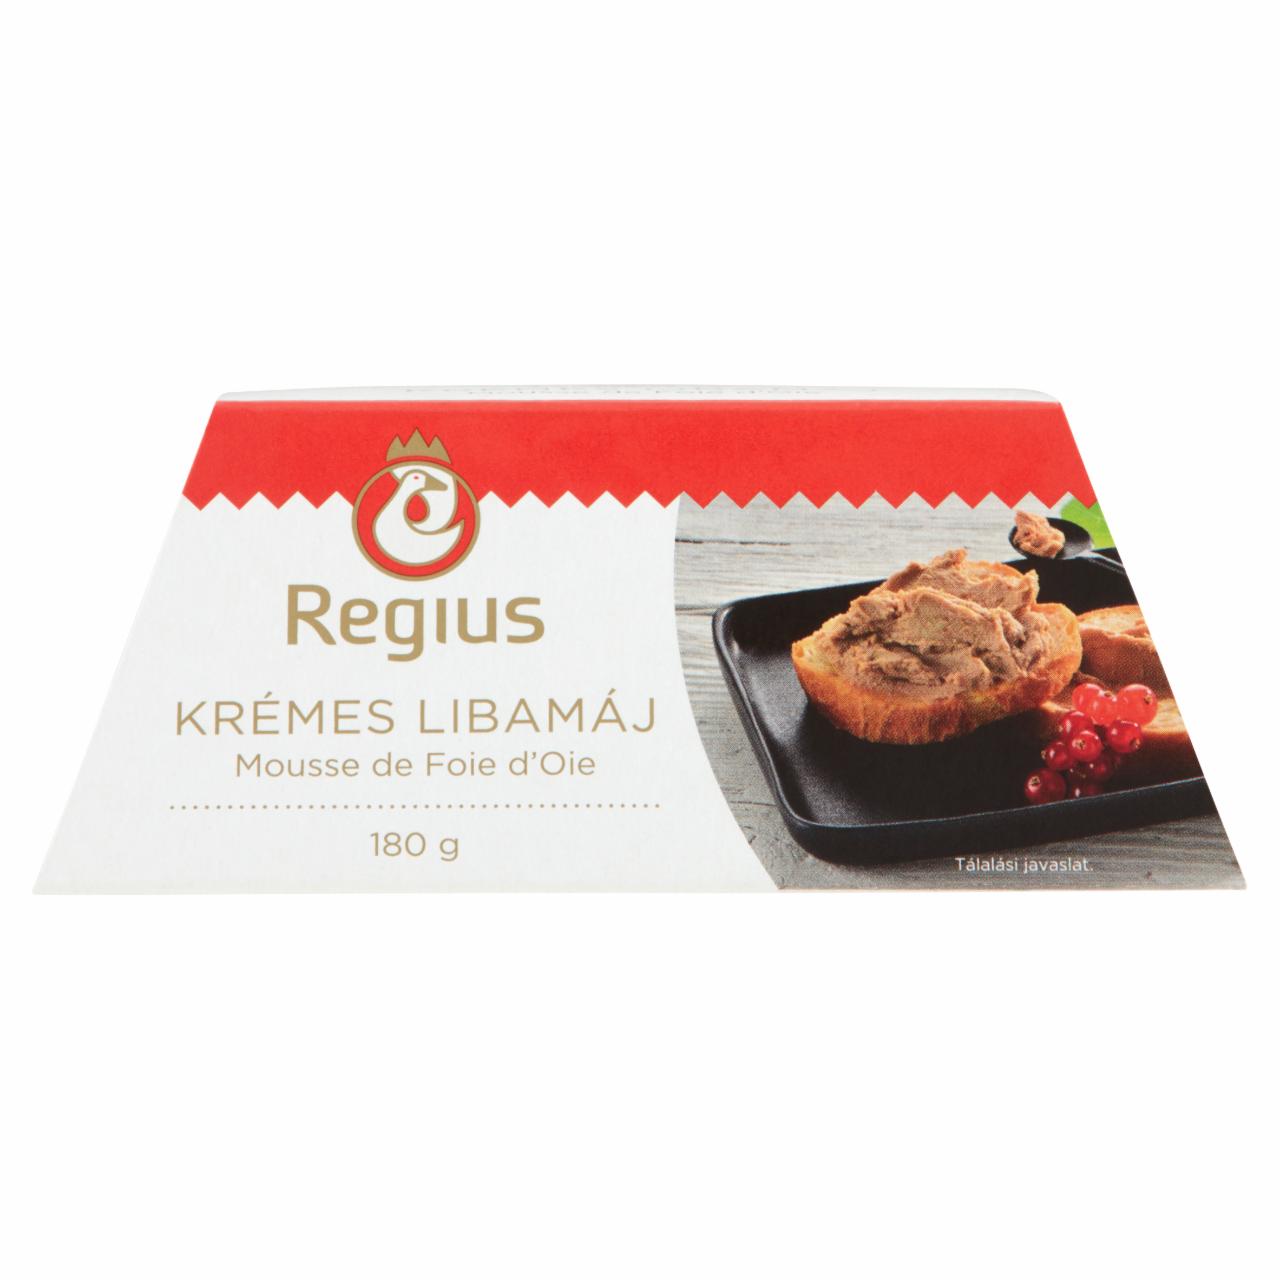 Képek - Regius Mousse de Foie d'Oie krémes libamáj 180 g